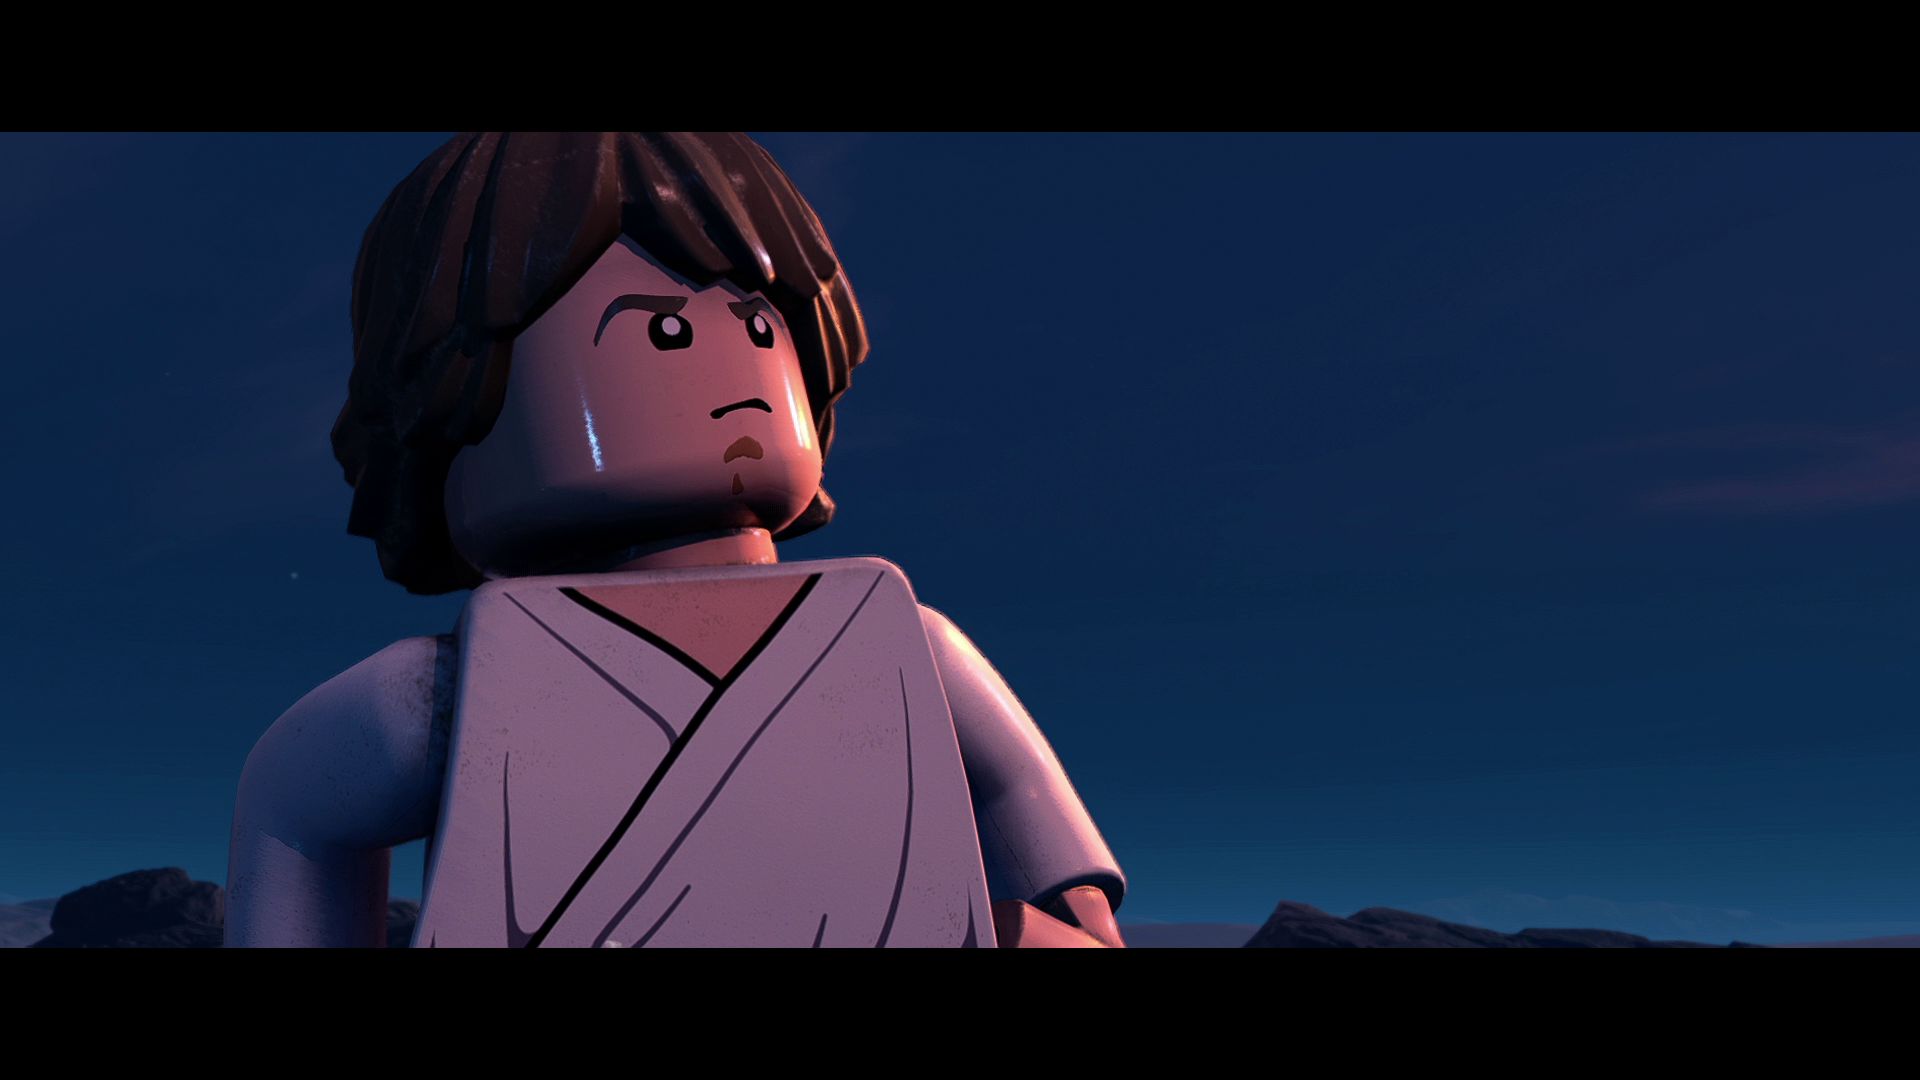 Lo hemos probado y os contamos nuestras impresiones de Lego Star Wars: The Skywalker Saga - Tuvimos la posibilidad de probar Lego Star Wars: The Skywalker Saga y te contamos nuestras impresiones.